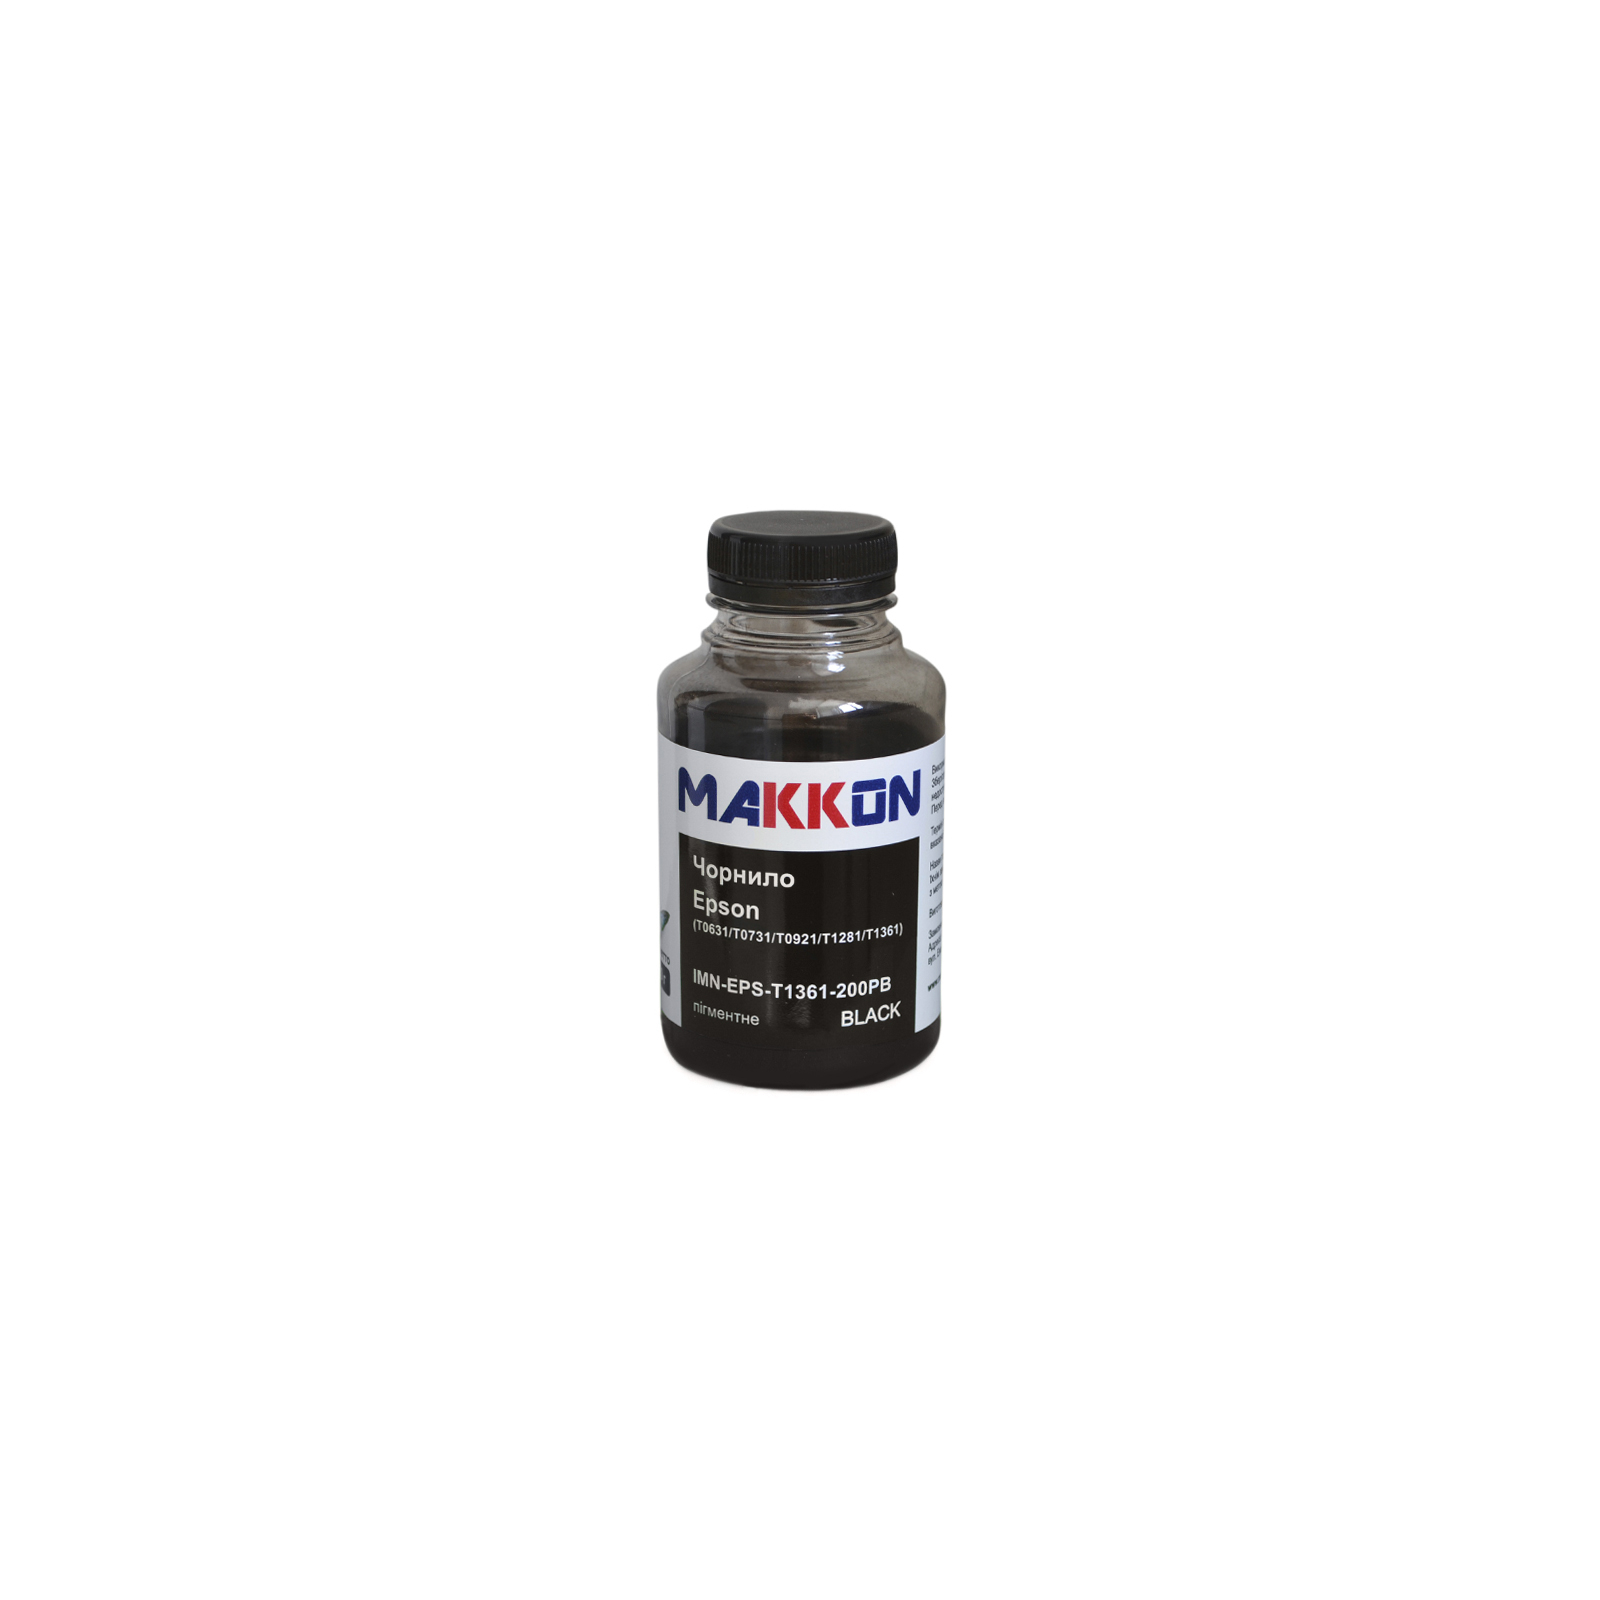 Чорнило Makkon Epson T0631/T0731/T0921/T1281/T1361 200г pigmented black (IMN-EPS-T1361-200PB)